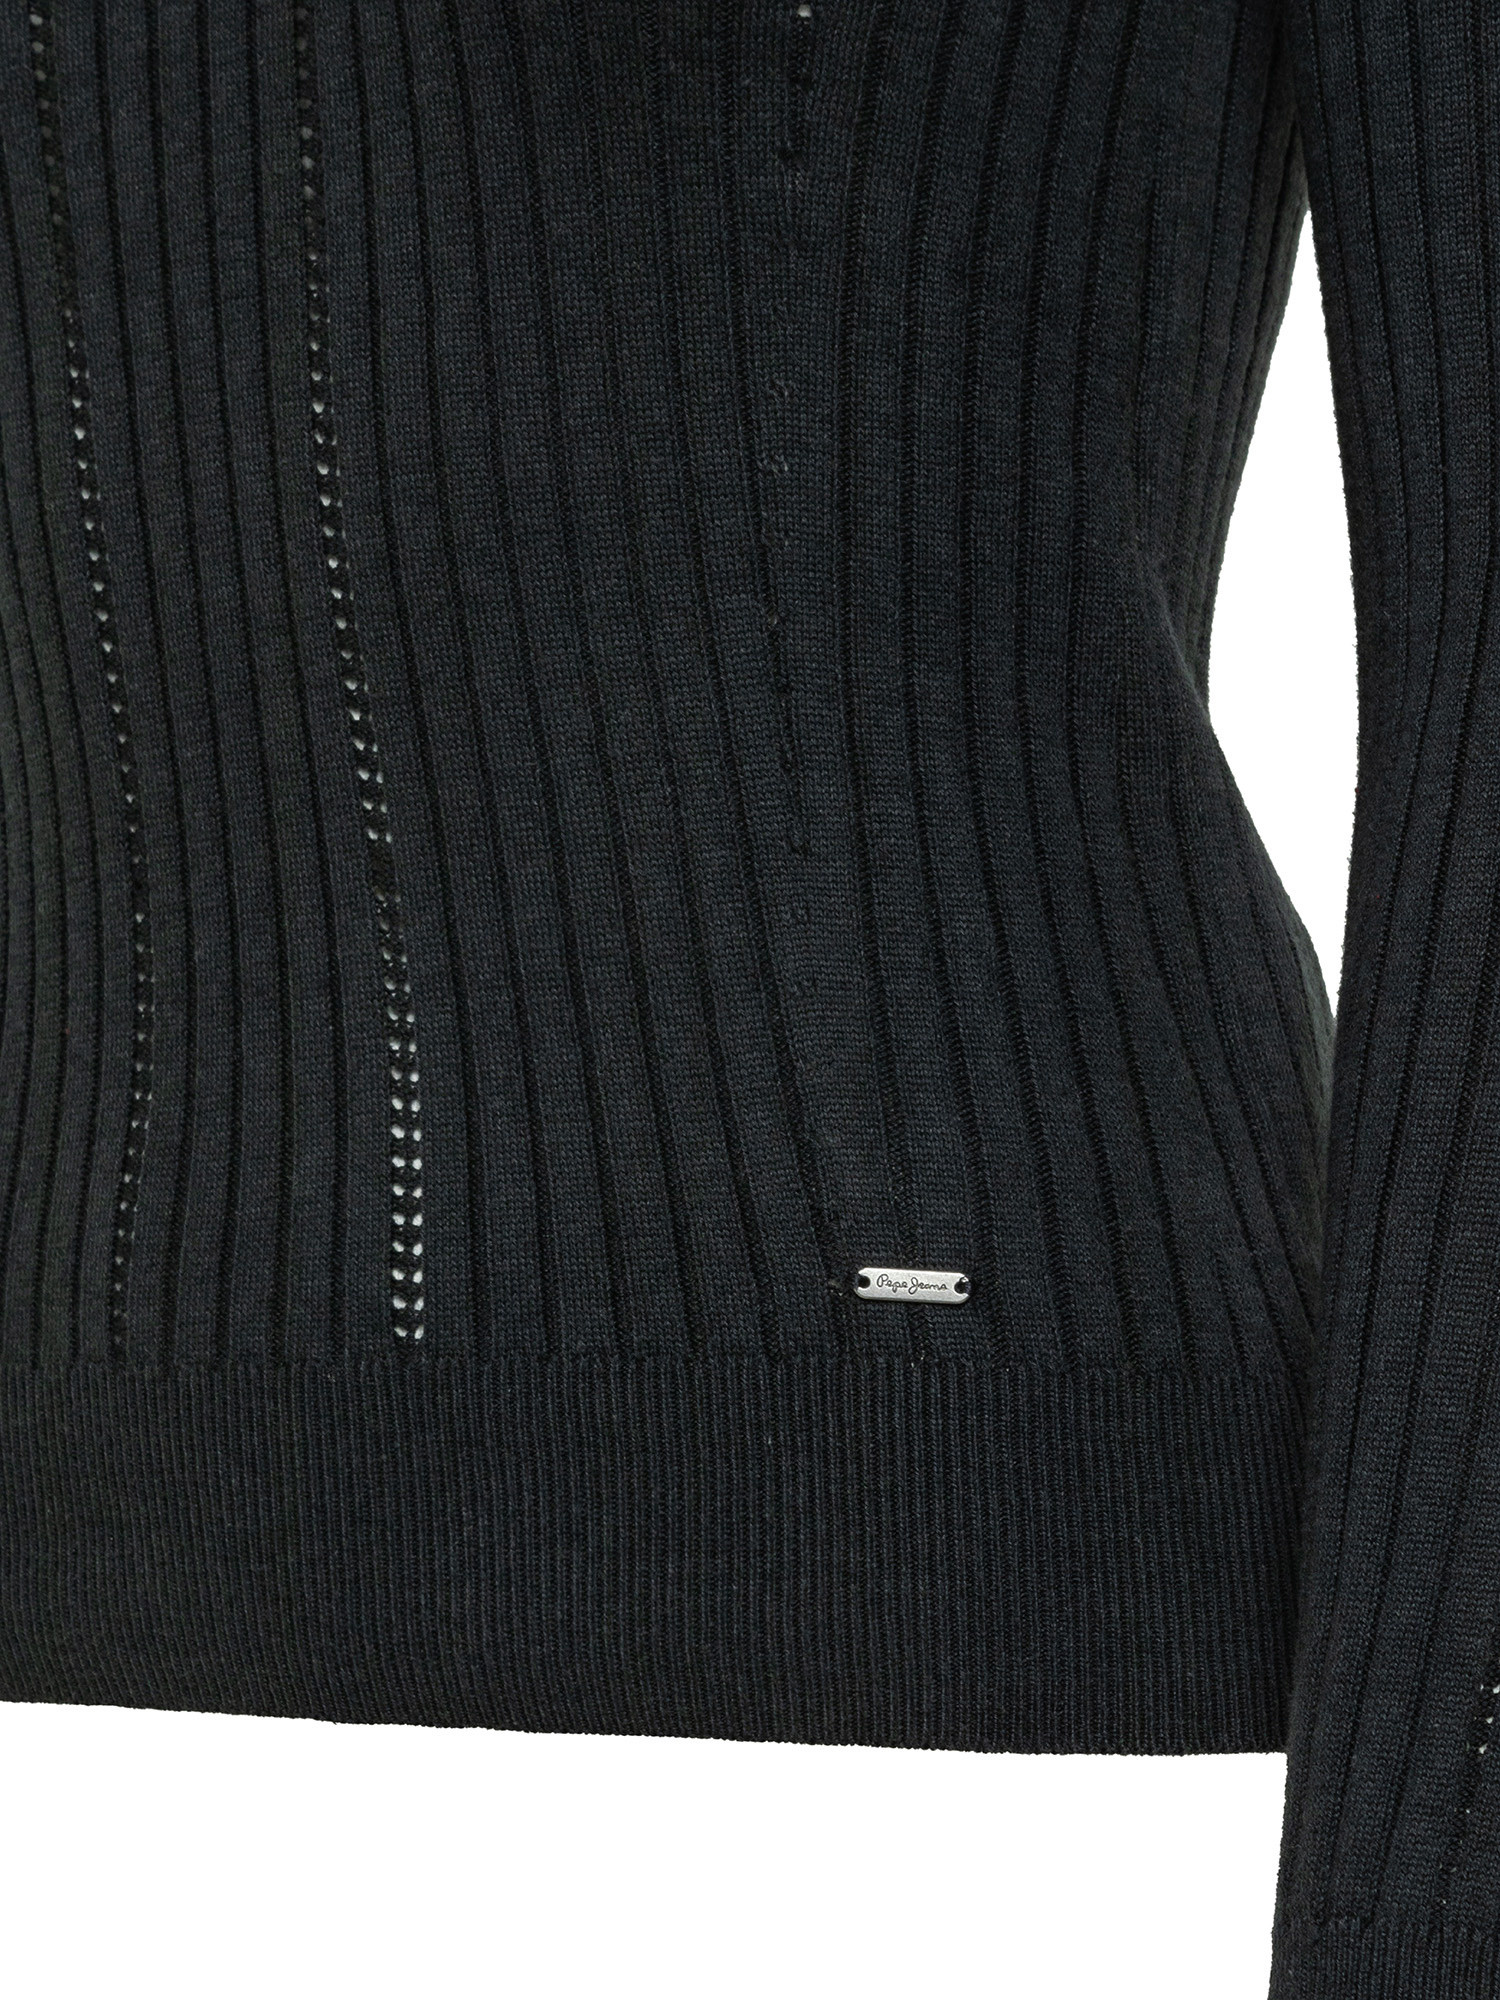 Bella ribbed turtleneck sweater, Black, large image number 2